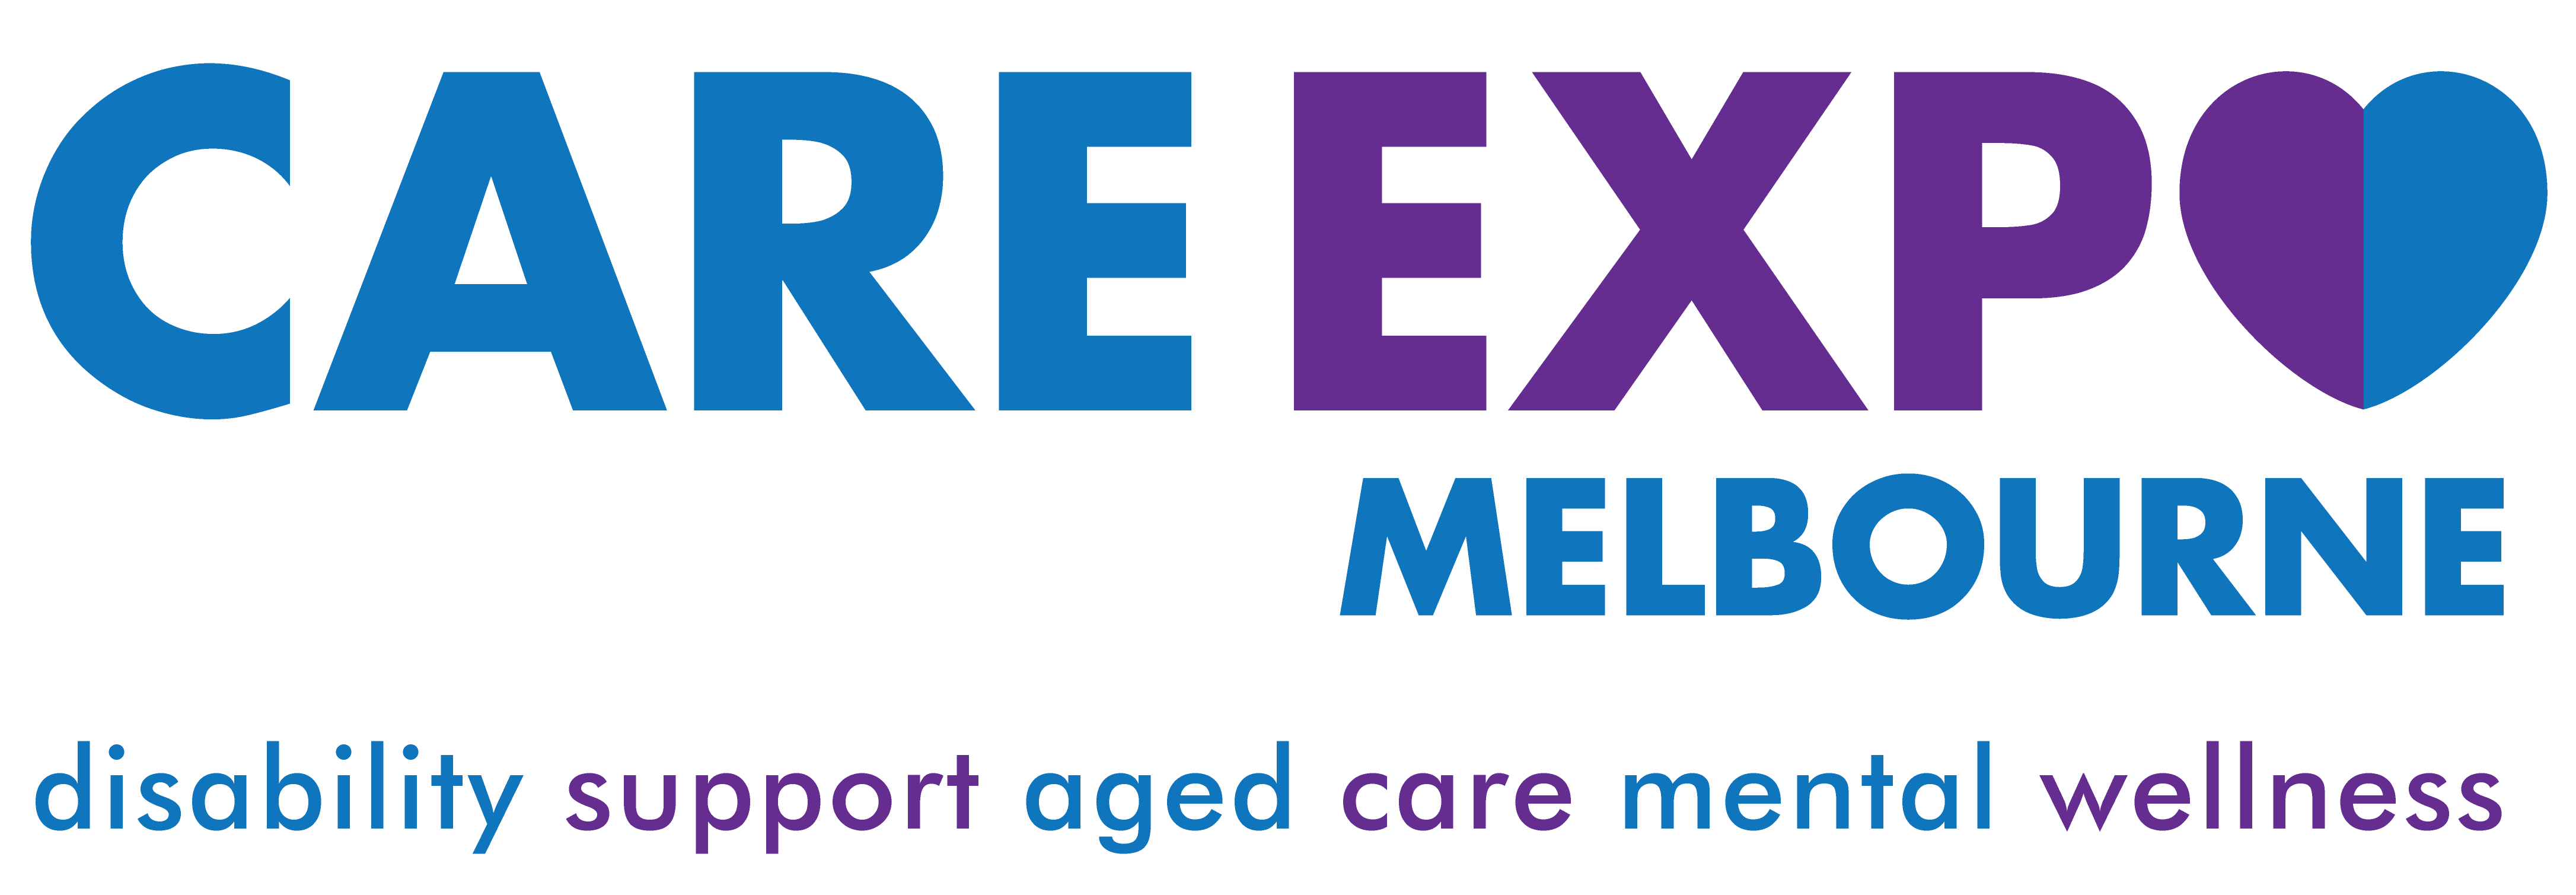 Care Expo Melbourne